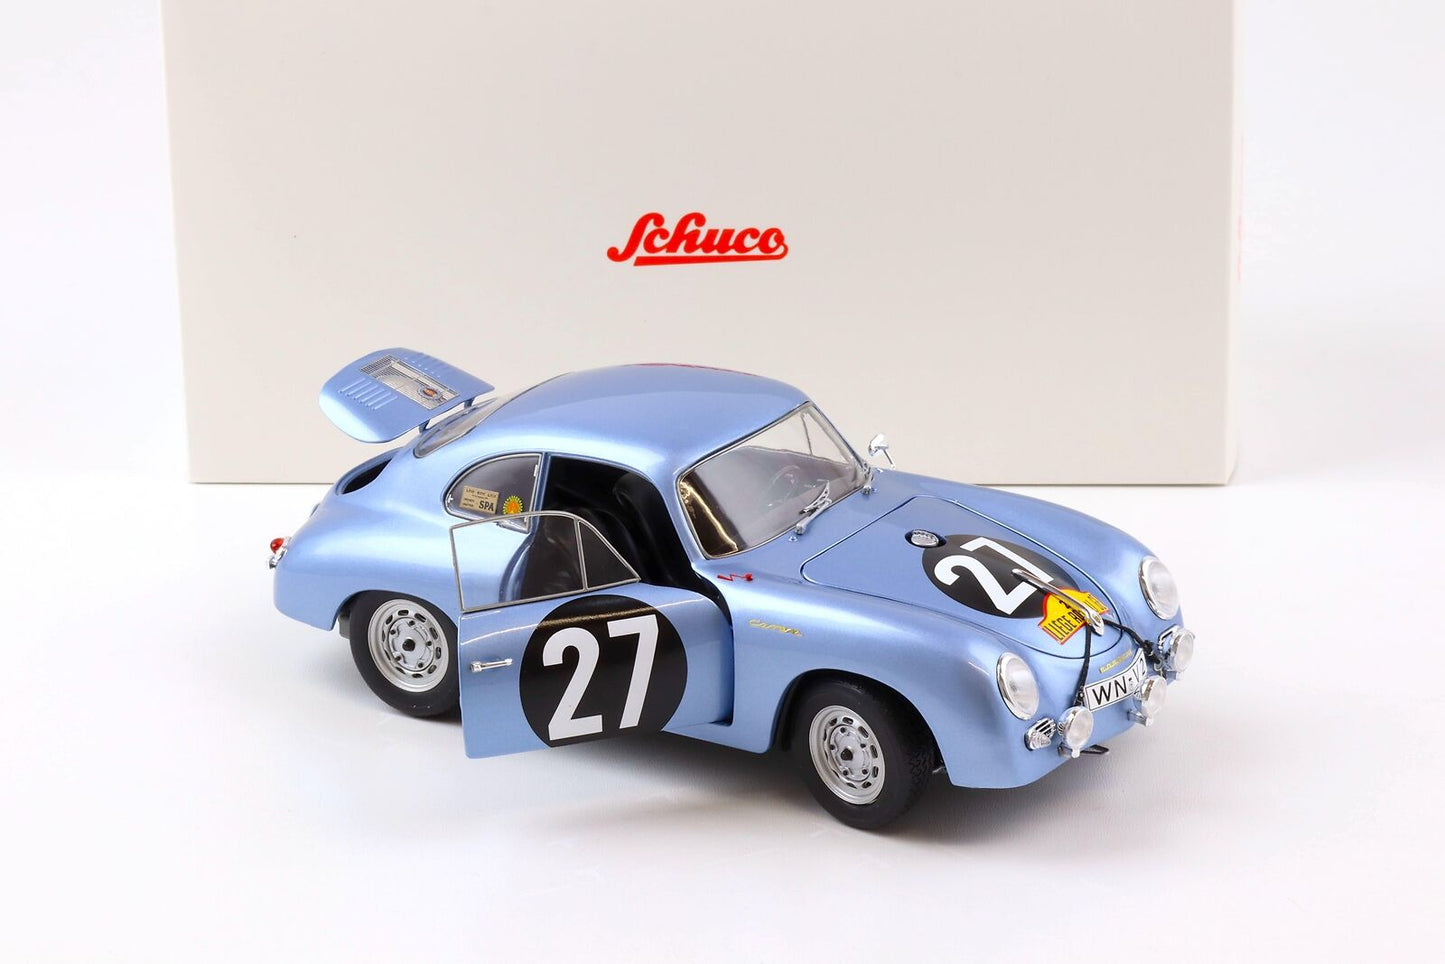 Schuco 1:18 Porsche 356 A Carrera Coupe #27 Robert Buchet/Paul Ernst Strahle Winner Rallye Liege - Rome - Liege 1959 450031900